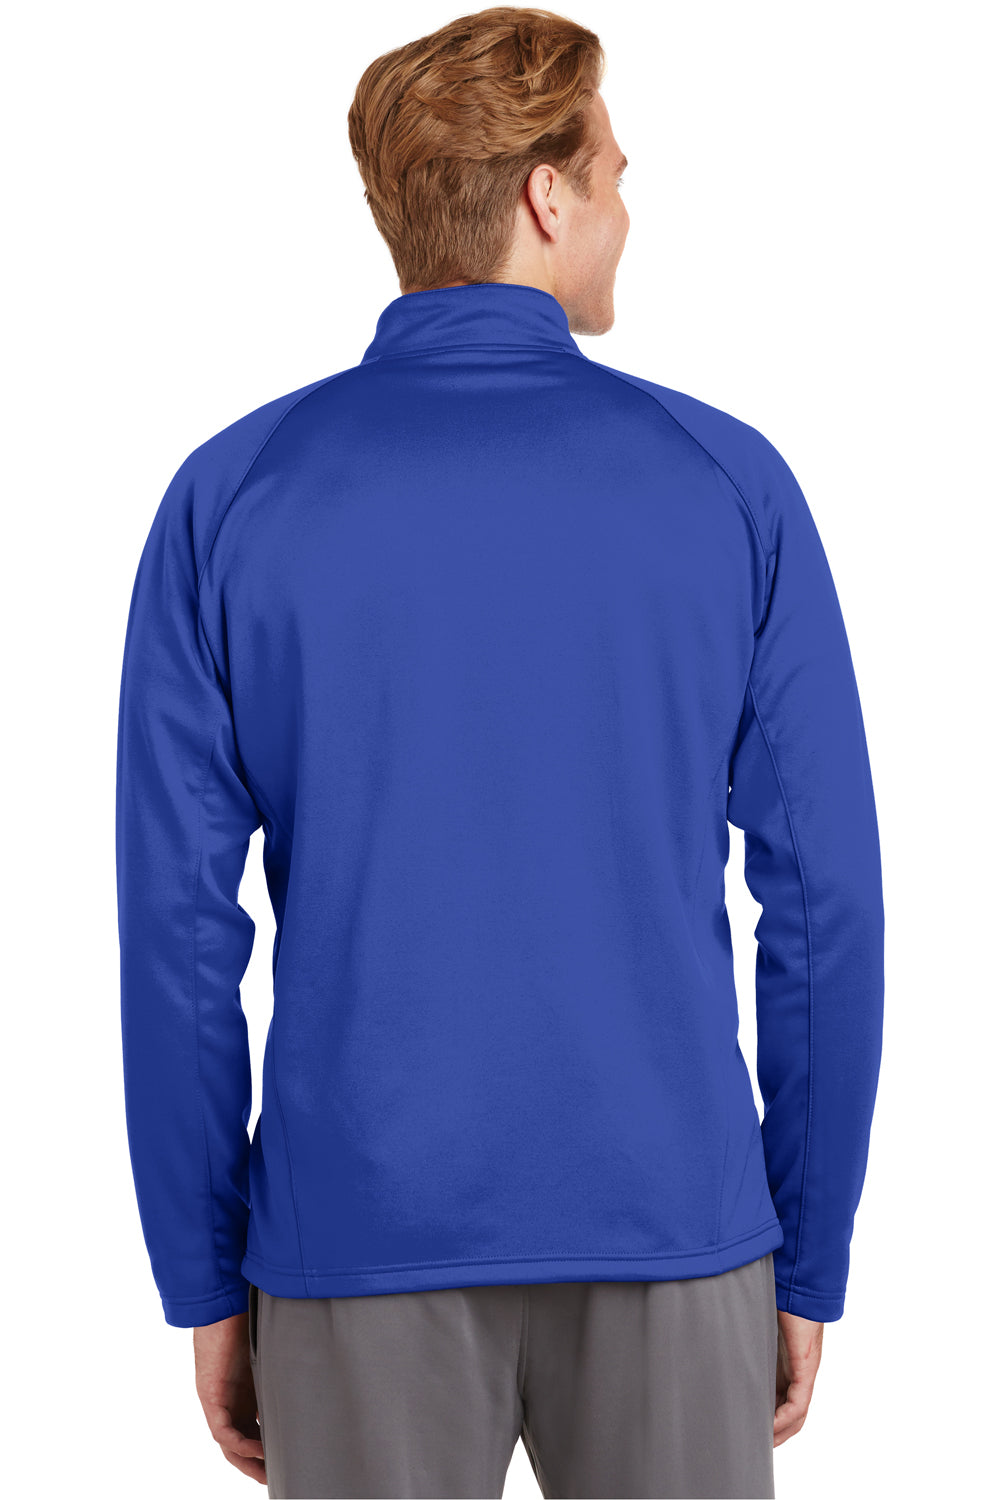 Sport-Tek F243 Mens Sport-Wick Moisture Wicking Fleece 1/4 Zip Sweatshirt Royal Blue Back